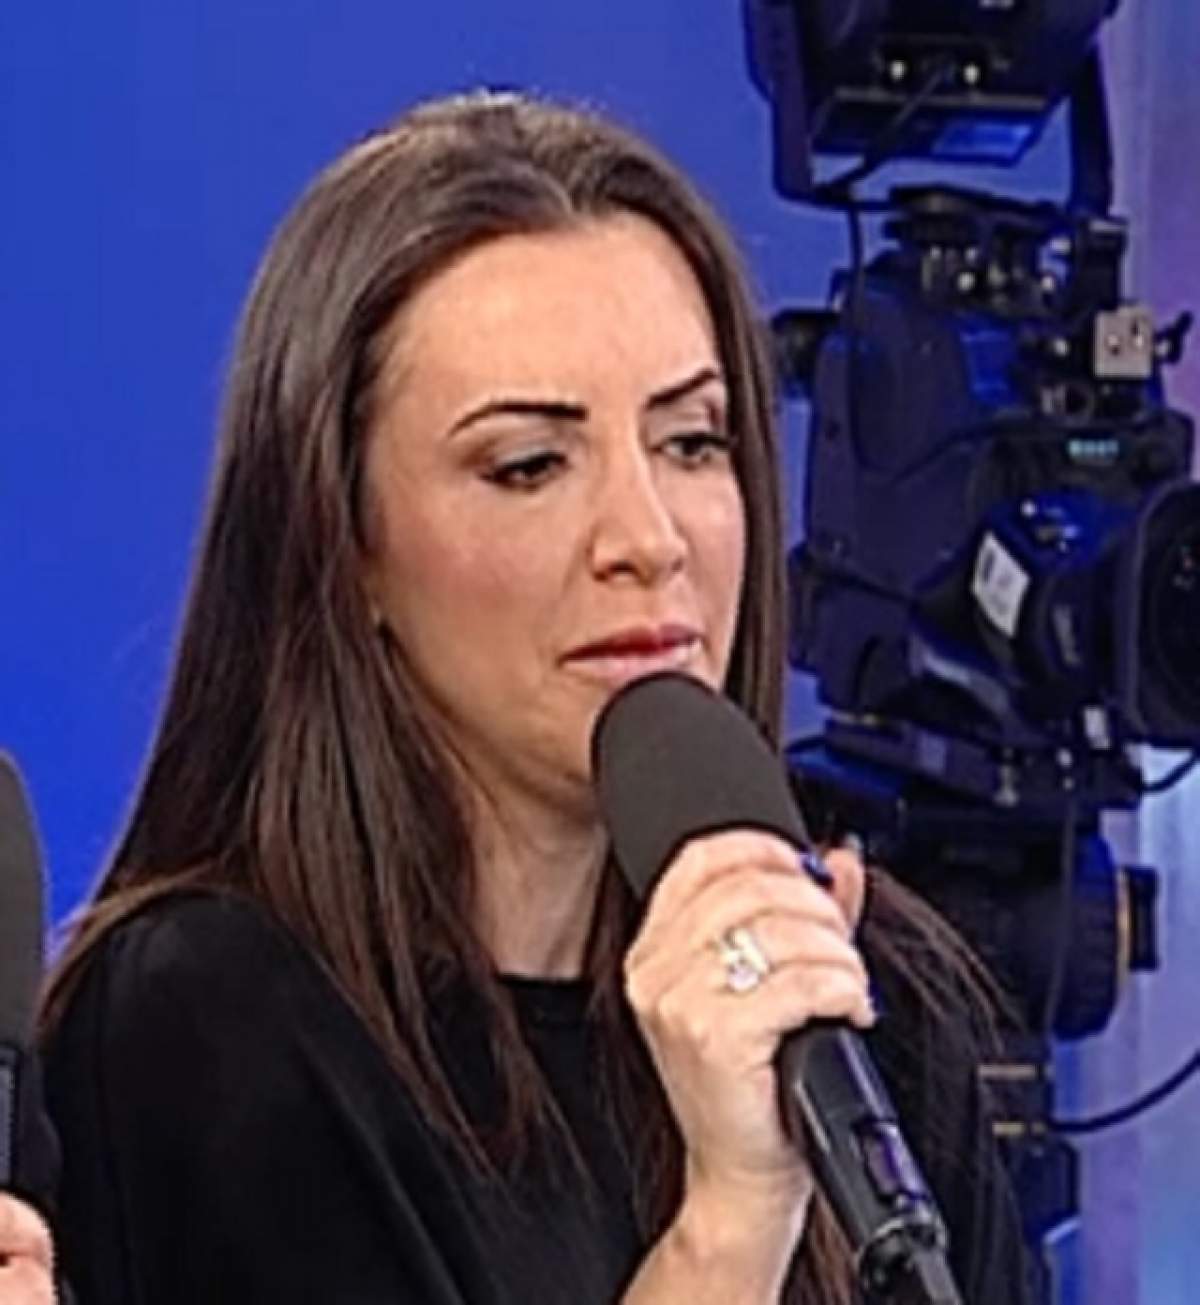 Mara Bănică, revoltată: "M-a durut foarte tare asta!"